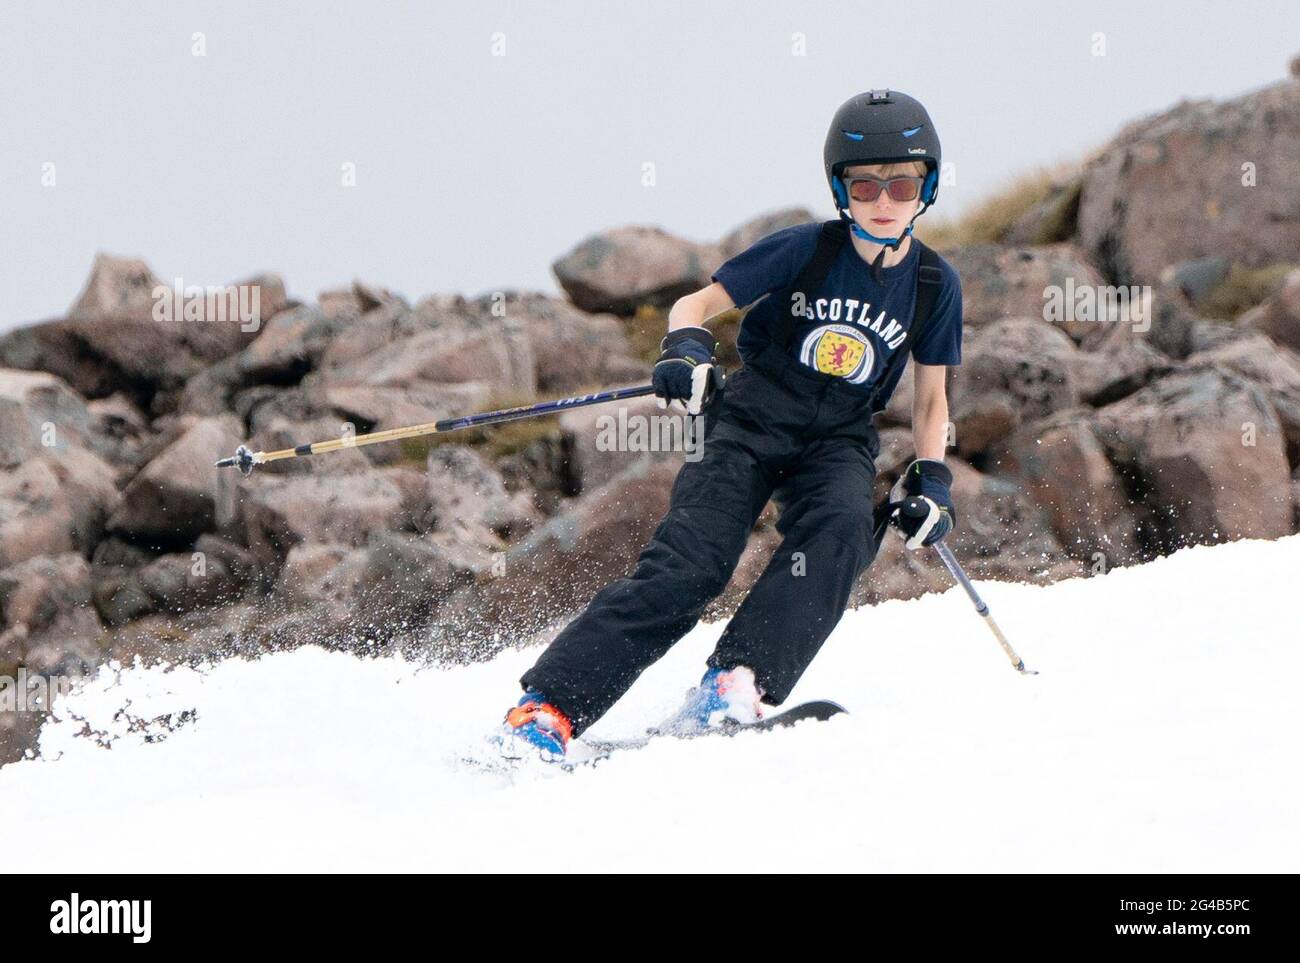 SEB Zante, âgée de 12 ans, de Glasgow, sur l'une des autres neigeuses de Meall a'Bhuiridh à Glencoe. SEB était la plus jeune personne à participer au ski de milieu d'été, un événement organisé par la station de Glencoe Mountain et tenu chaque année le week-end le plus proche du solstice d'été. Date de la photo: Dimanche 20 juin 2021. Banque D'Images